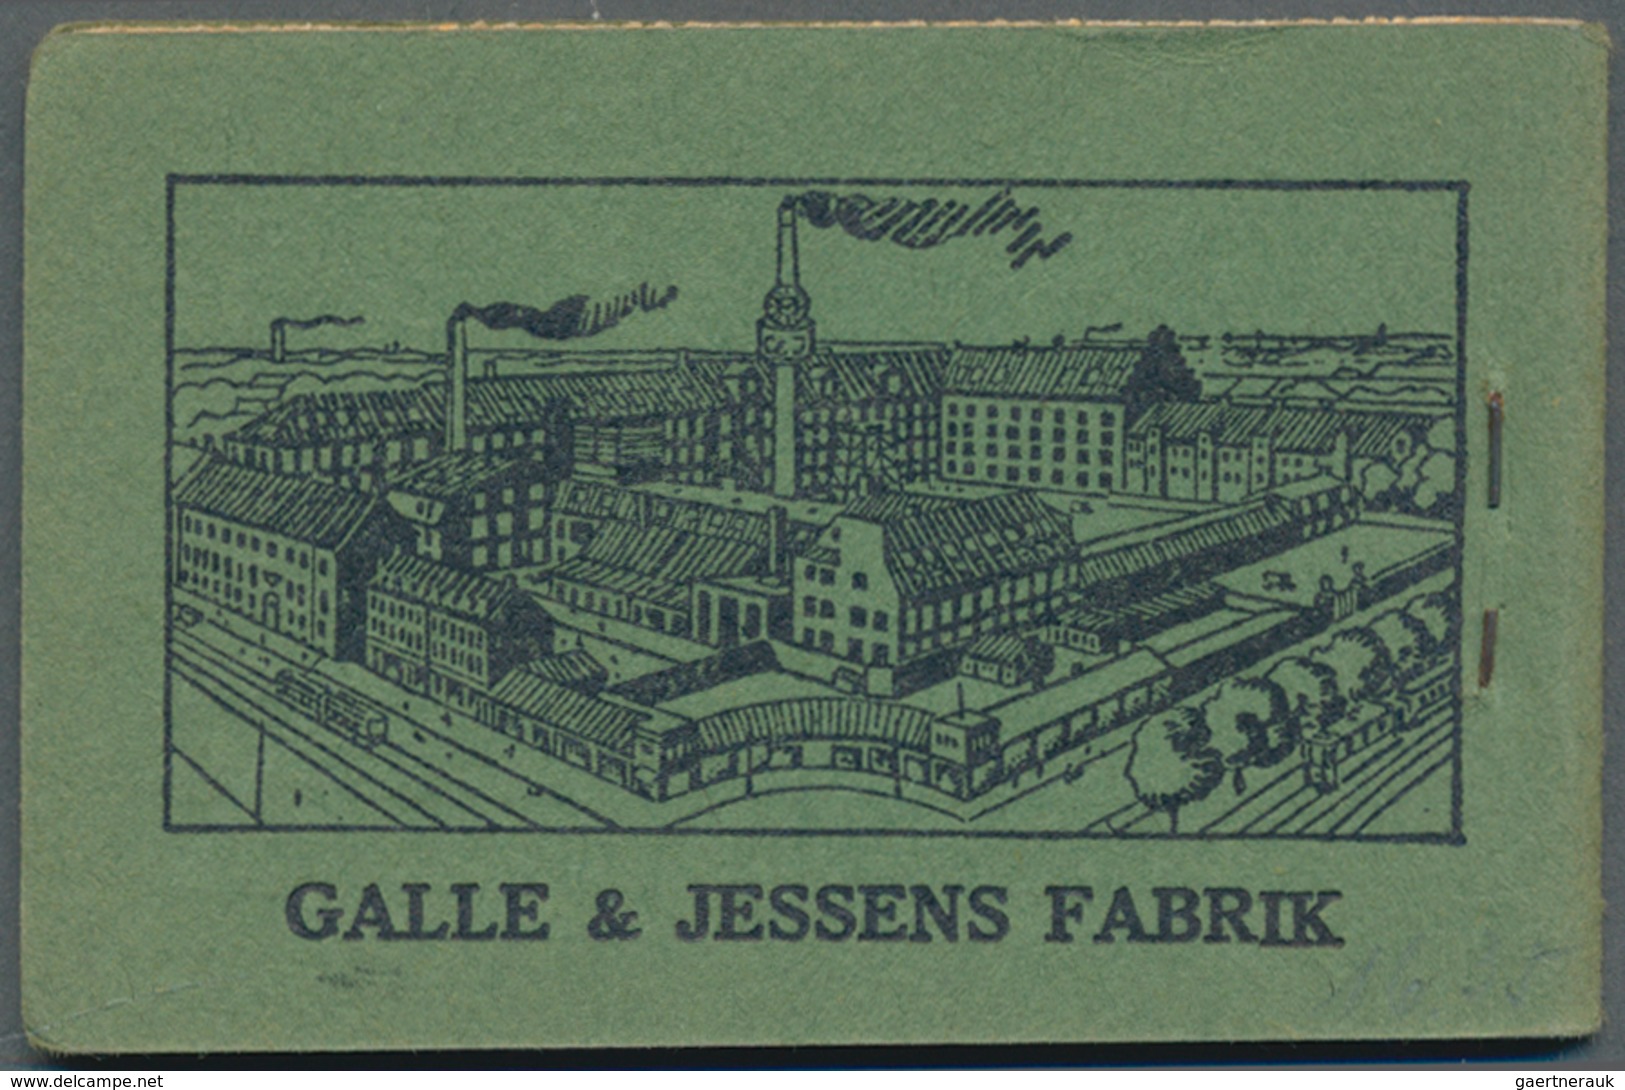 Dänemark - Markenheftchen: 1931, Stamp Booklet 2kr. Black On Green (16 X 10öre And 8 X 5öre) With 'G - Booklets